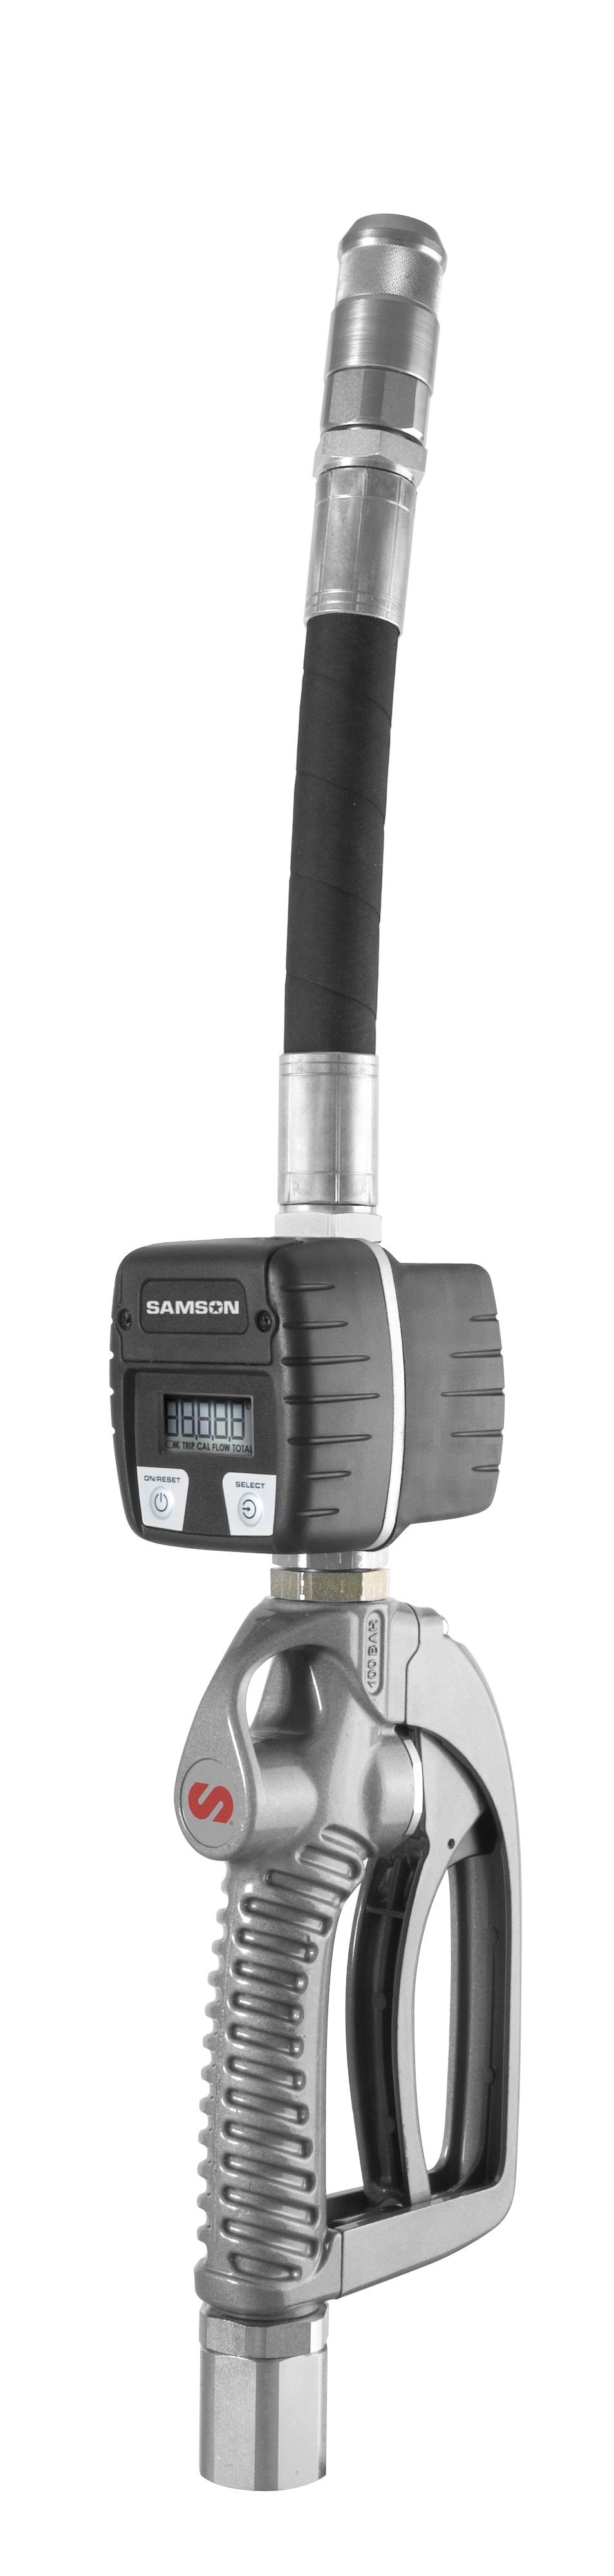 SAMSON 365 654 ELECTRONIC METERED HANDLE W/FLEXIBLE